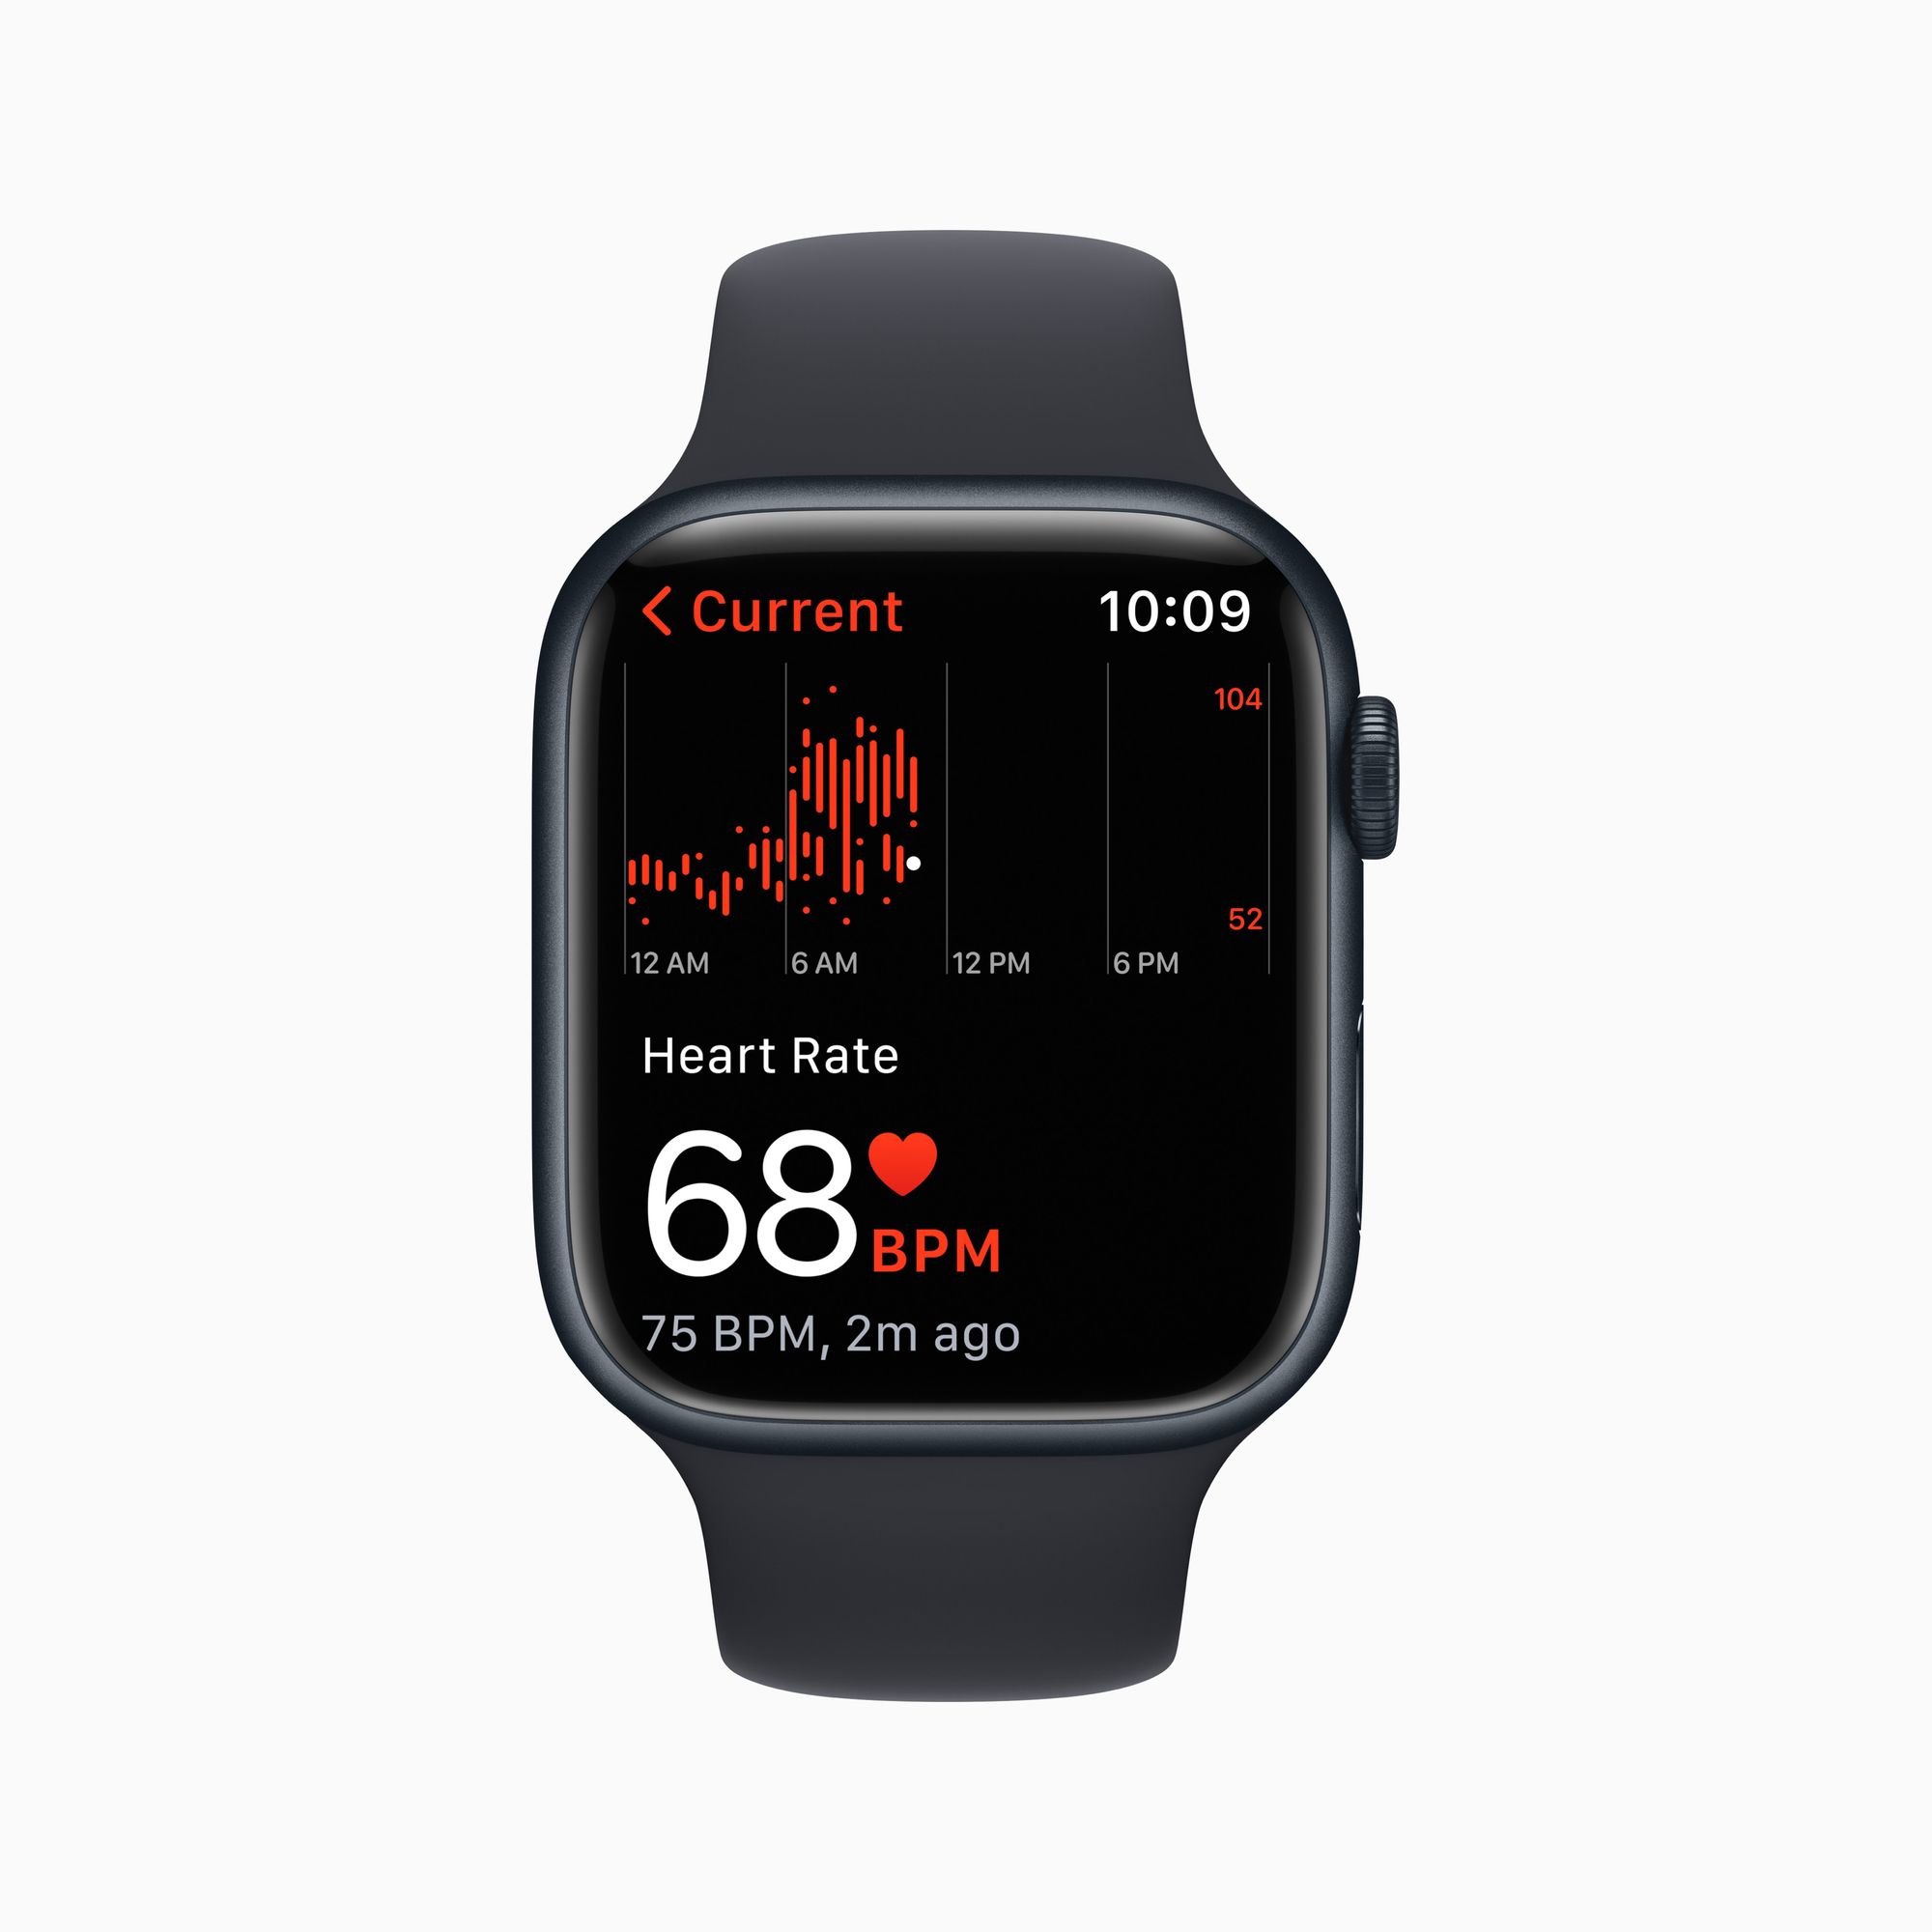 Apple Watch configurado em inglês com indicação dos batimentos cardíacos.